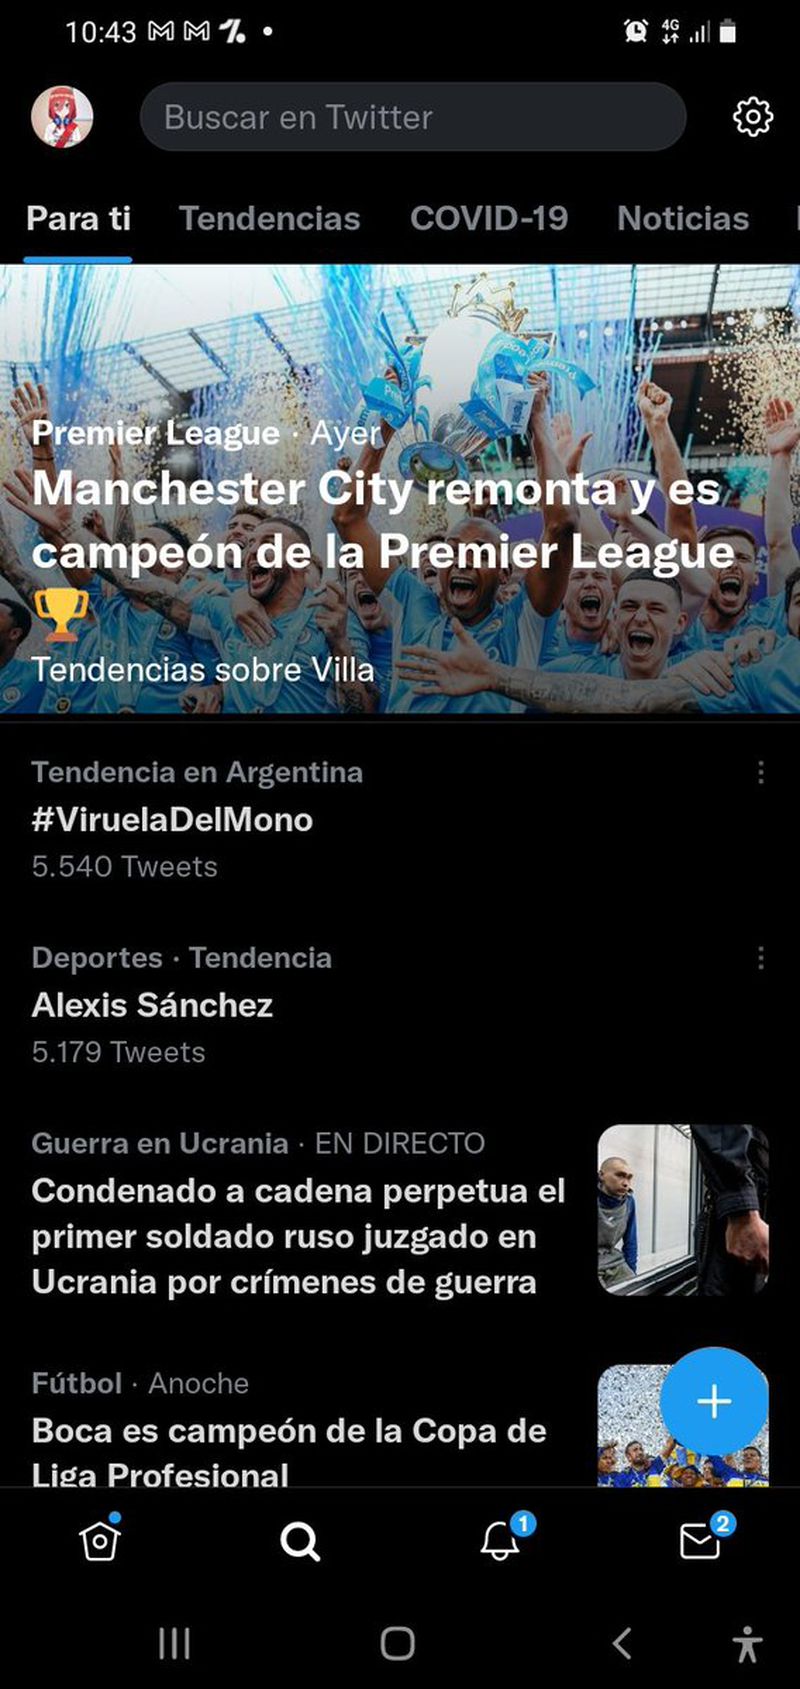 Alexis Sánchez es trending topic en Argentina ante un eventual regreso a River Plate.